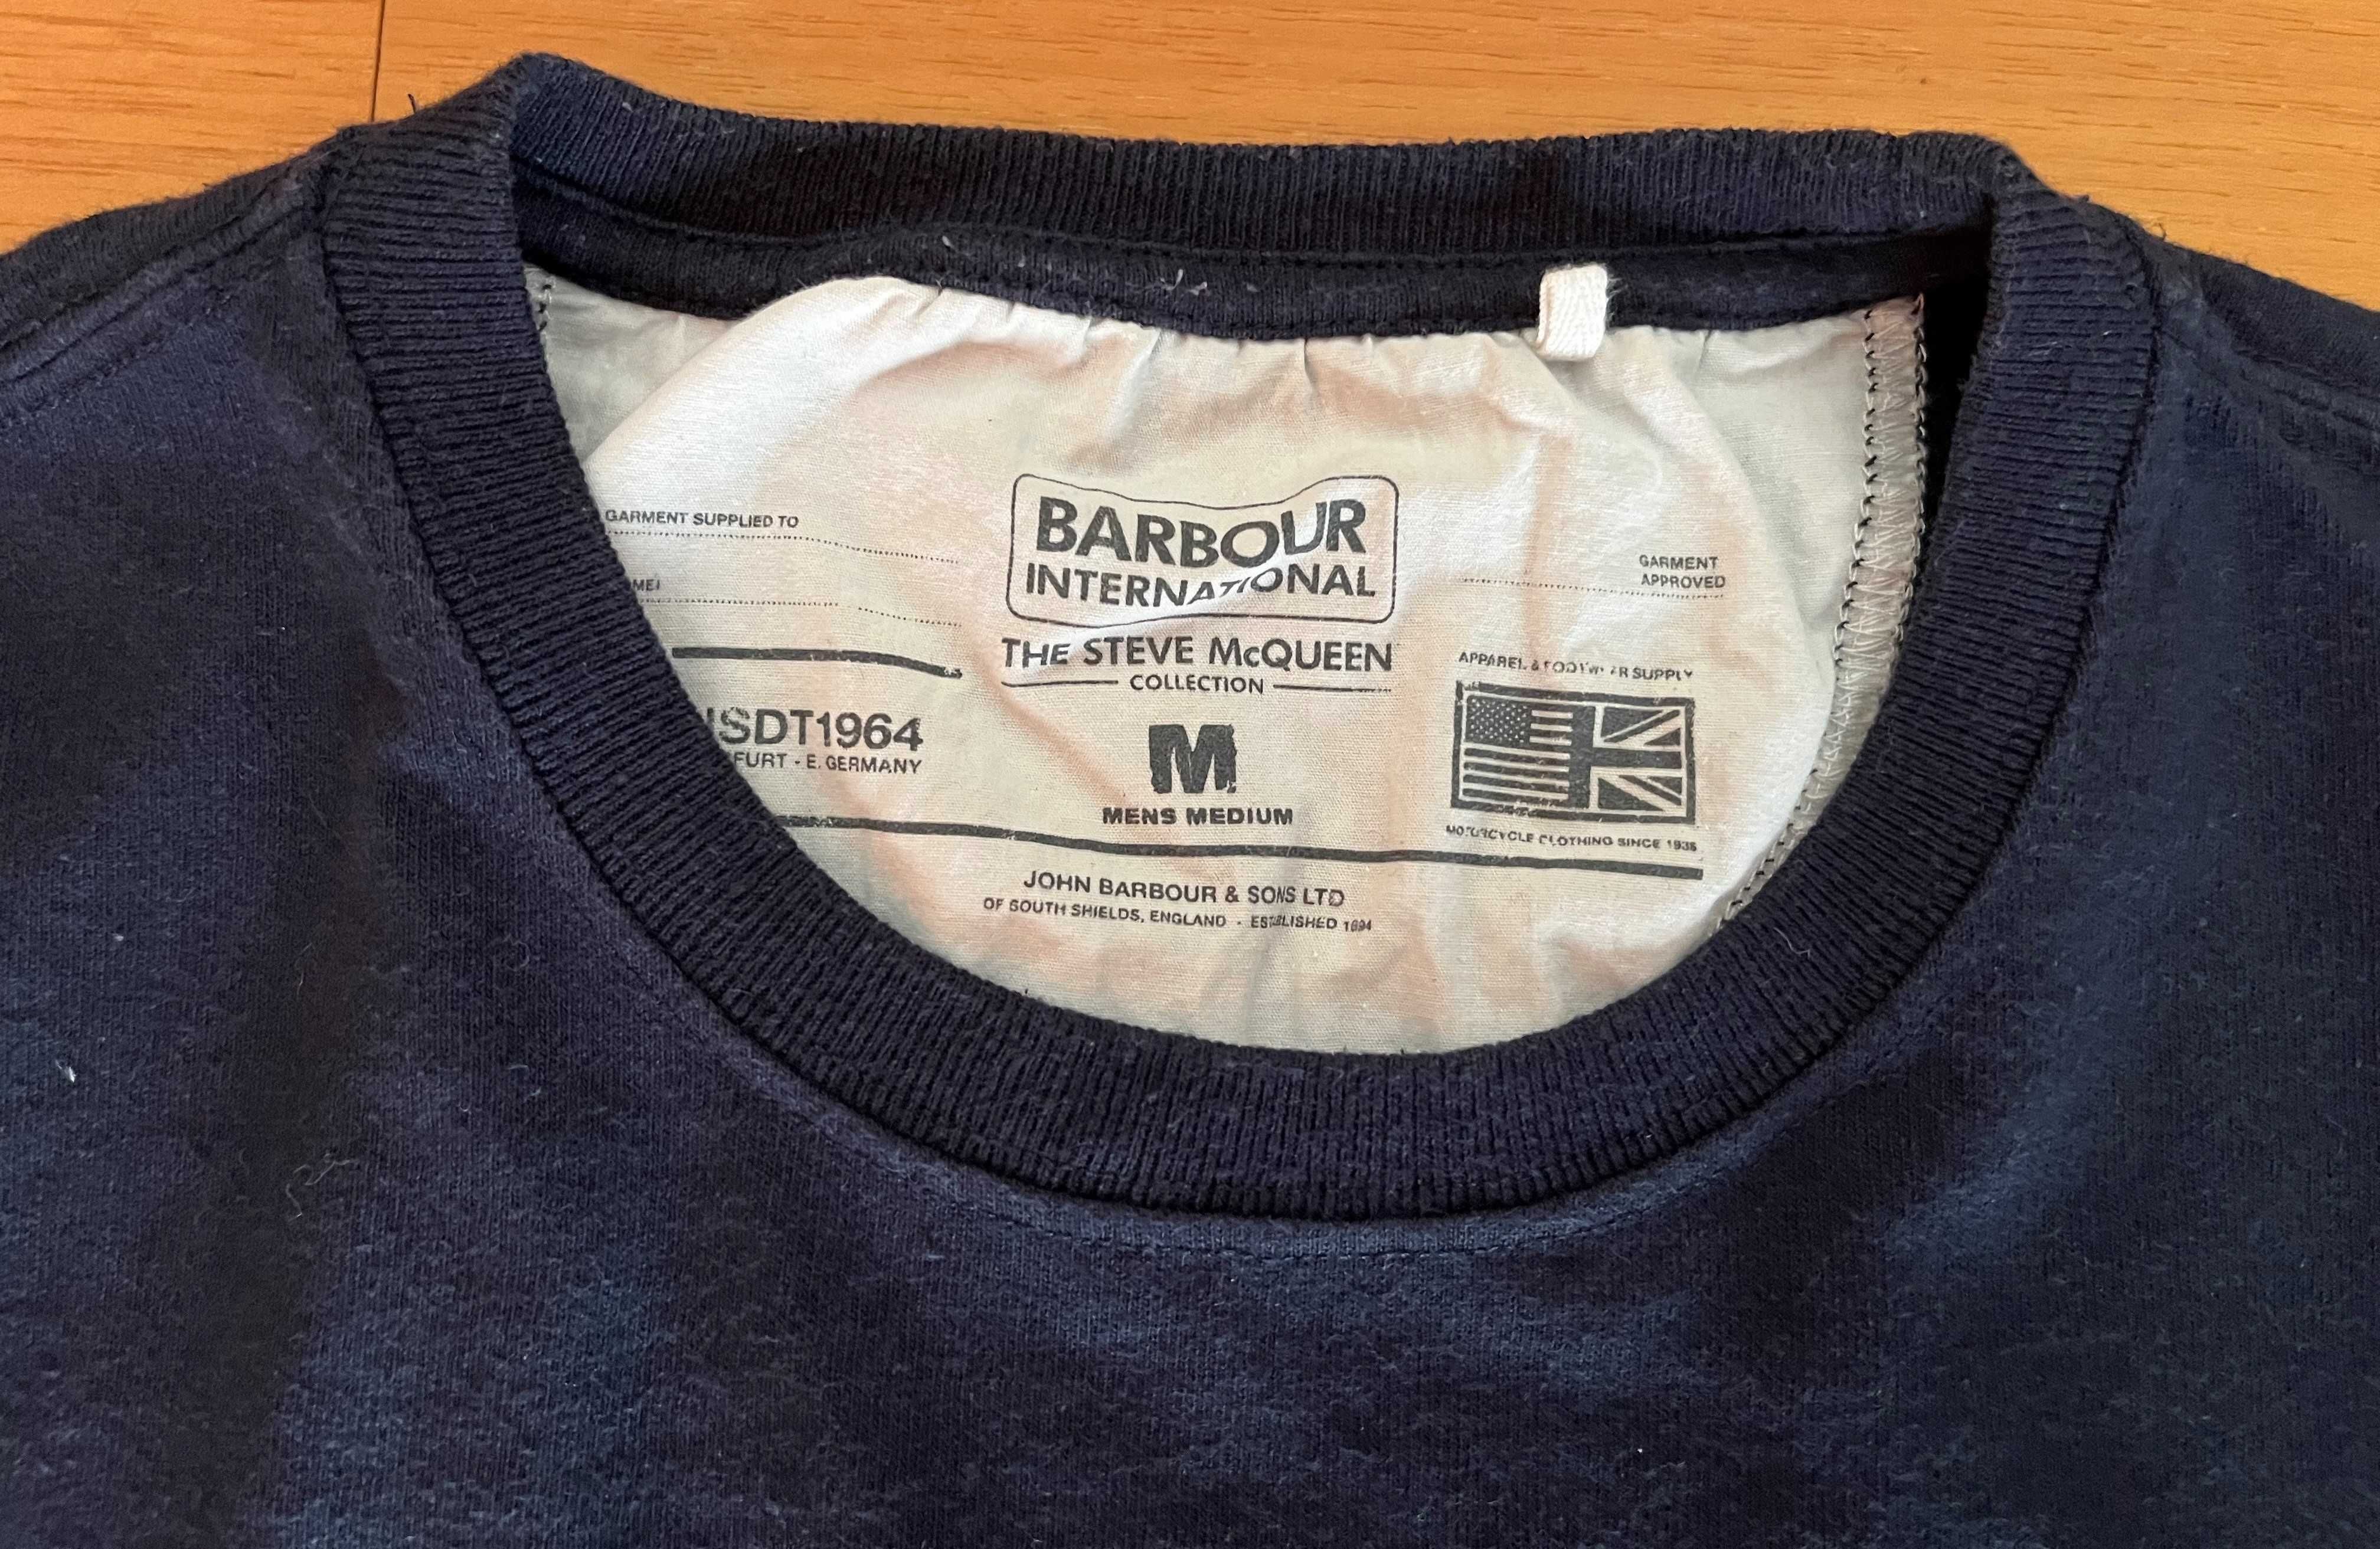 T-shirt azul marinho da Barbour - Homem - Tamanho M